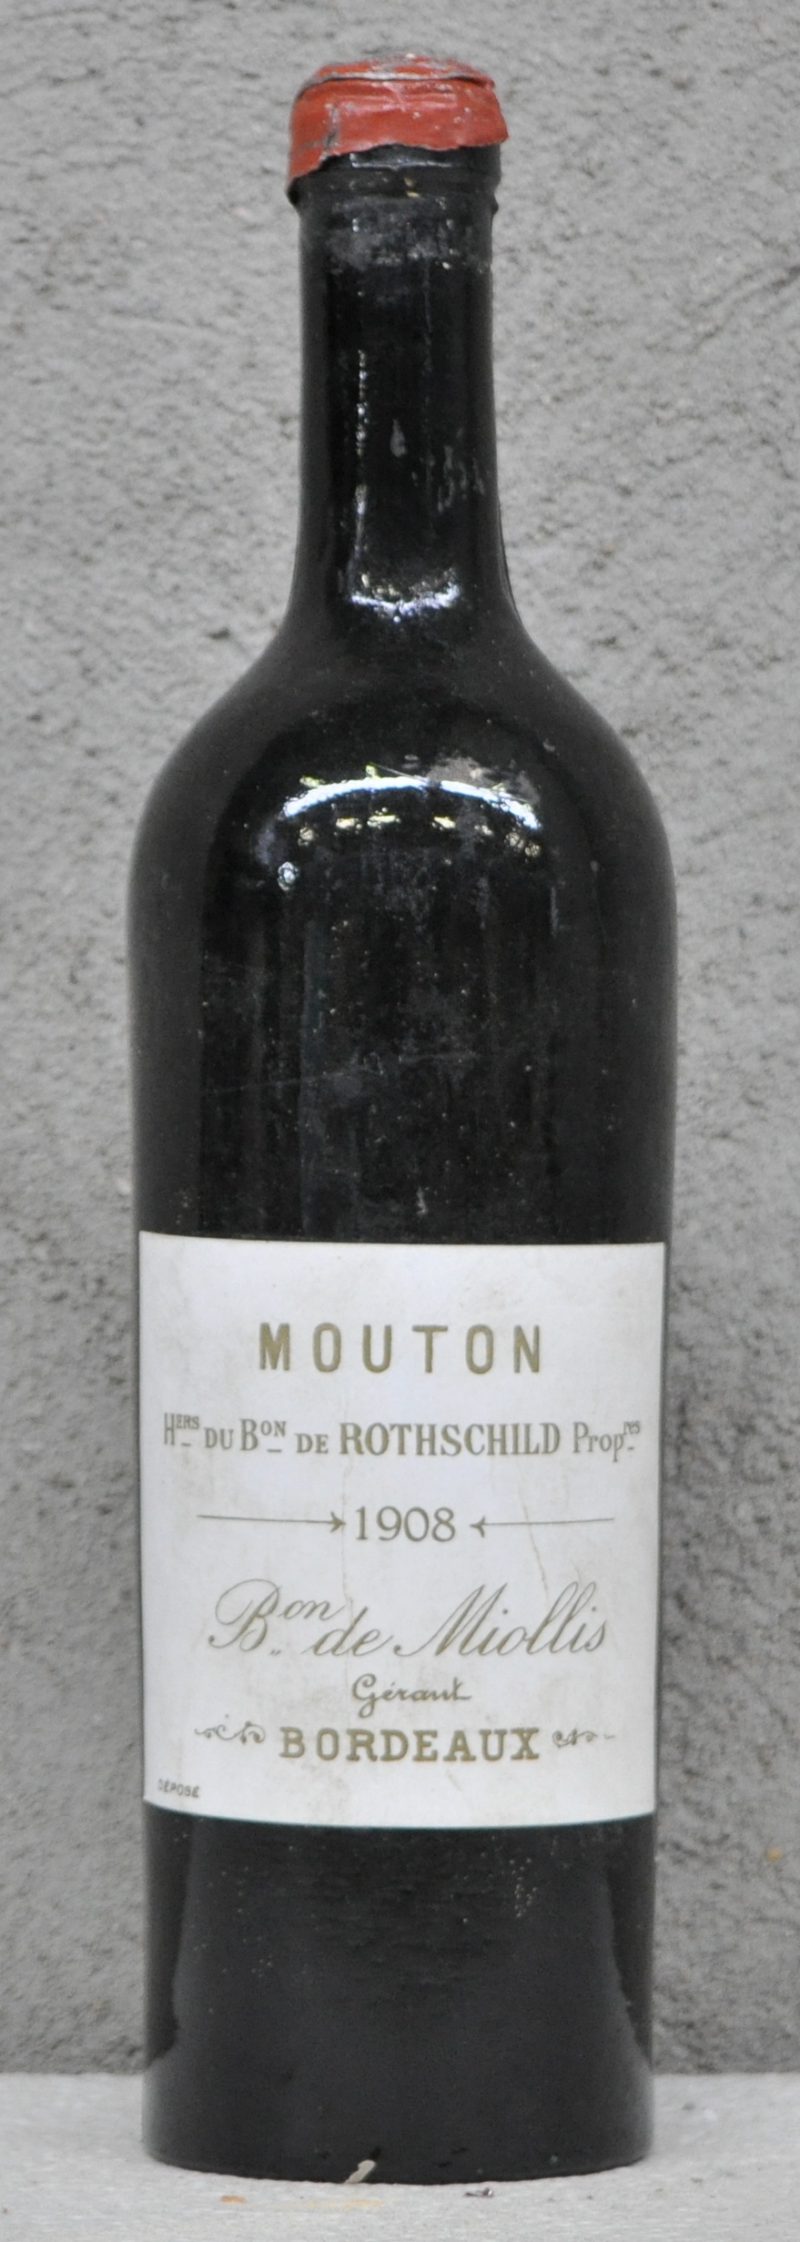 Mouton   Hers du Bon de Rothschild Propres, Bordeaux   1908  aantal: 1 bt ms, afgesneden capsule